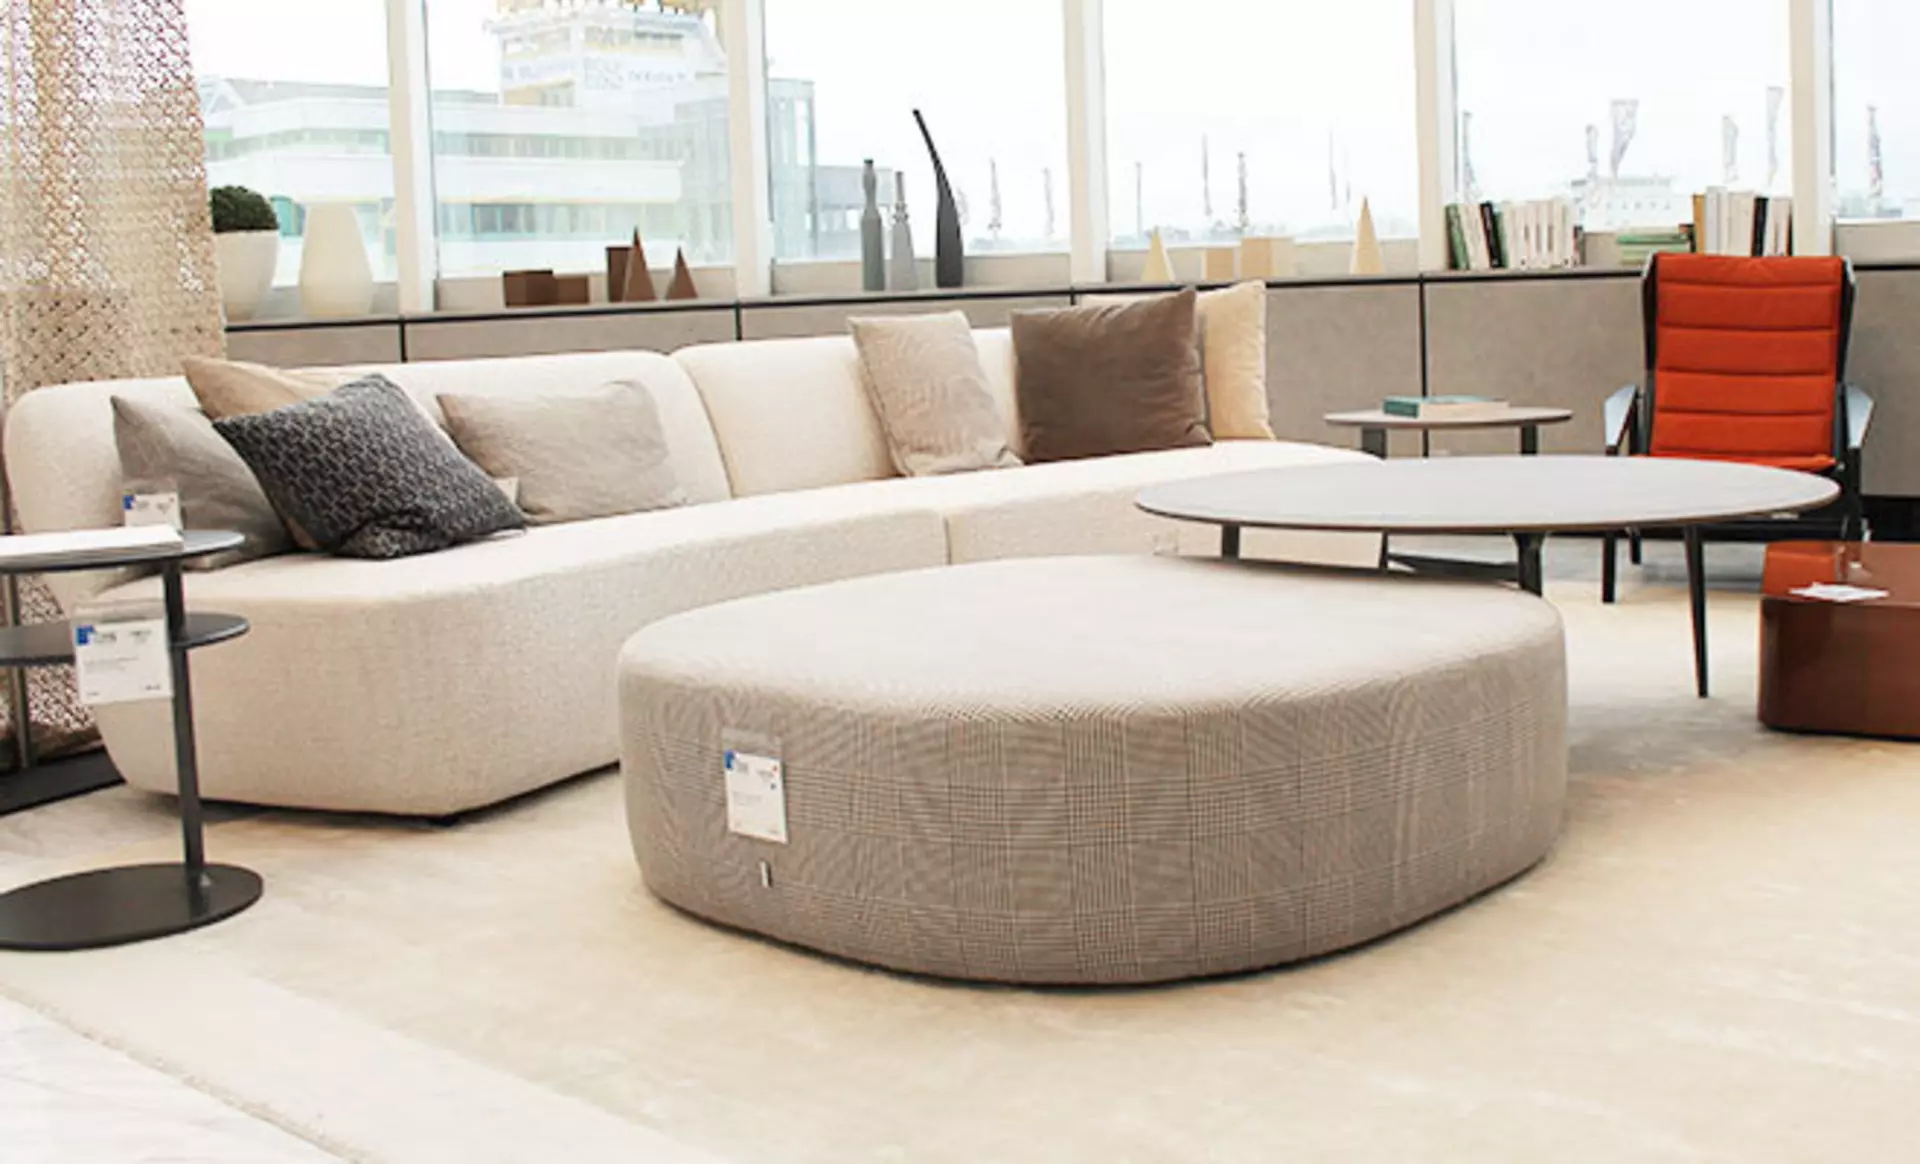 Designer Sofa von Moltei & C bei interni by inhofer